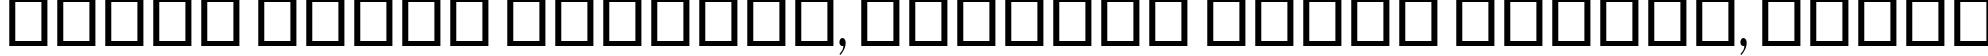 Пример написания шрифтом Onyx текста на белорусском